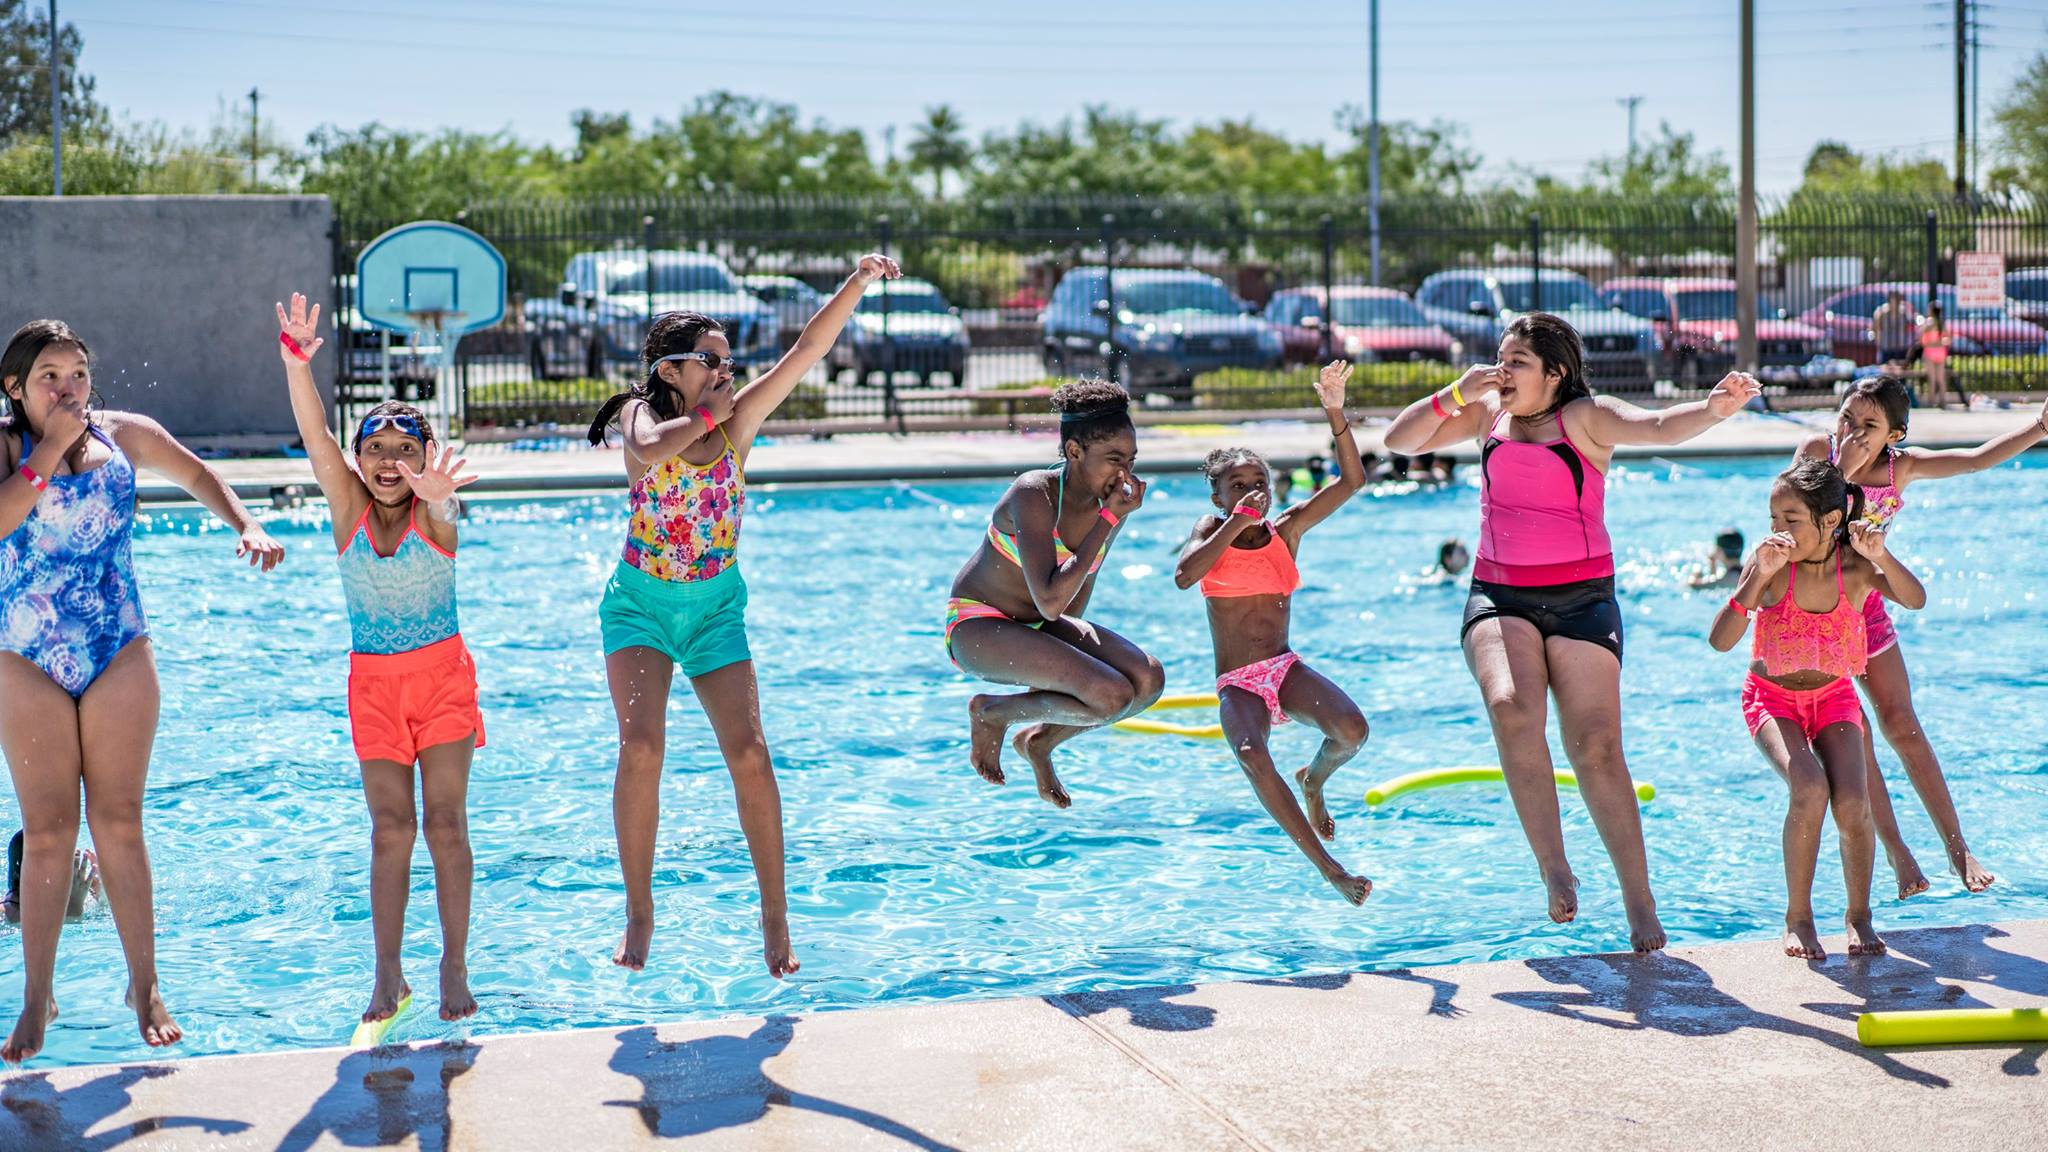 Line of kids jumping in pool.jpg